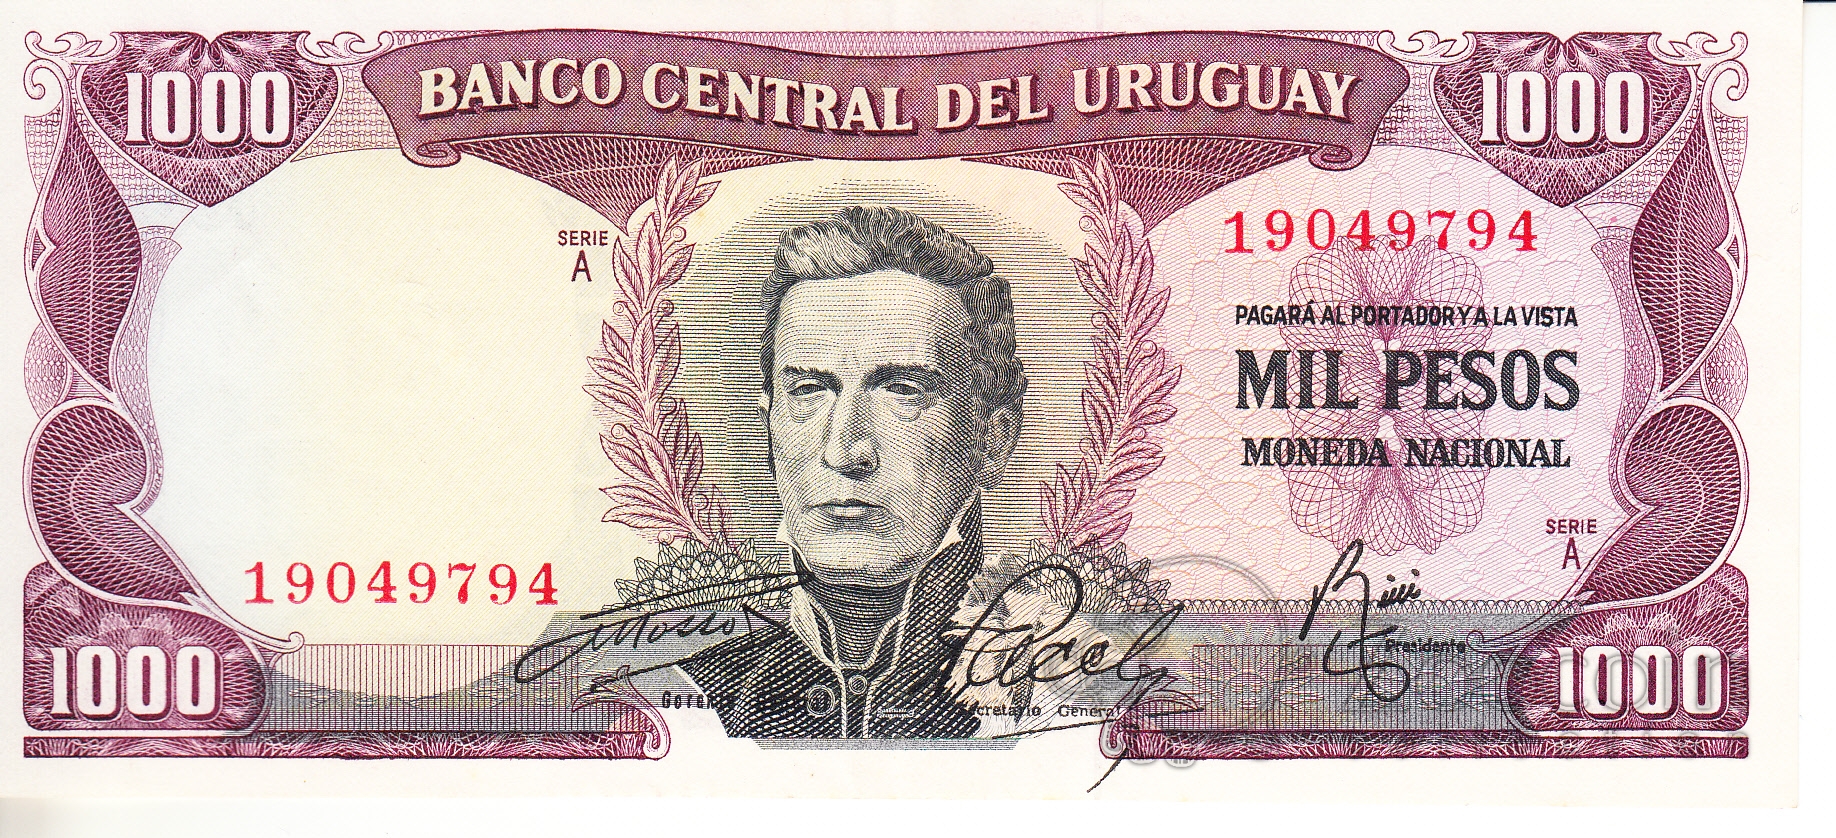 валюта уругвая